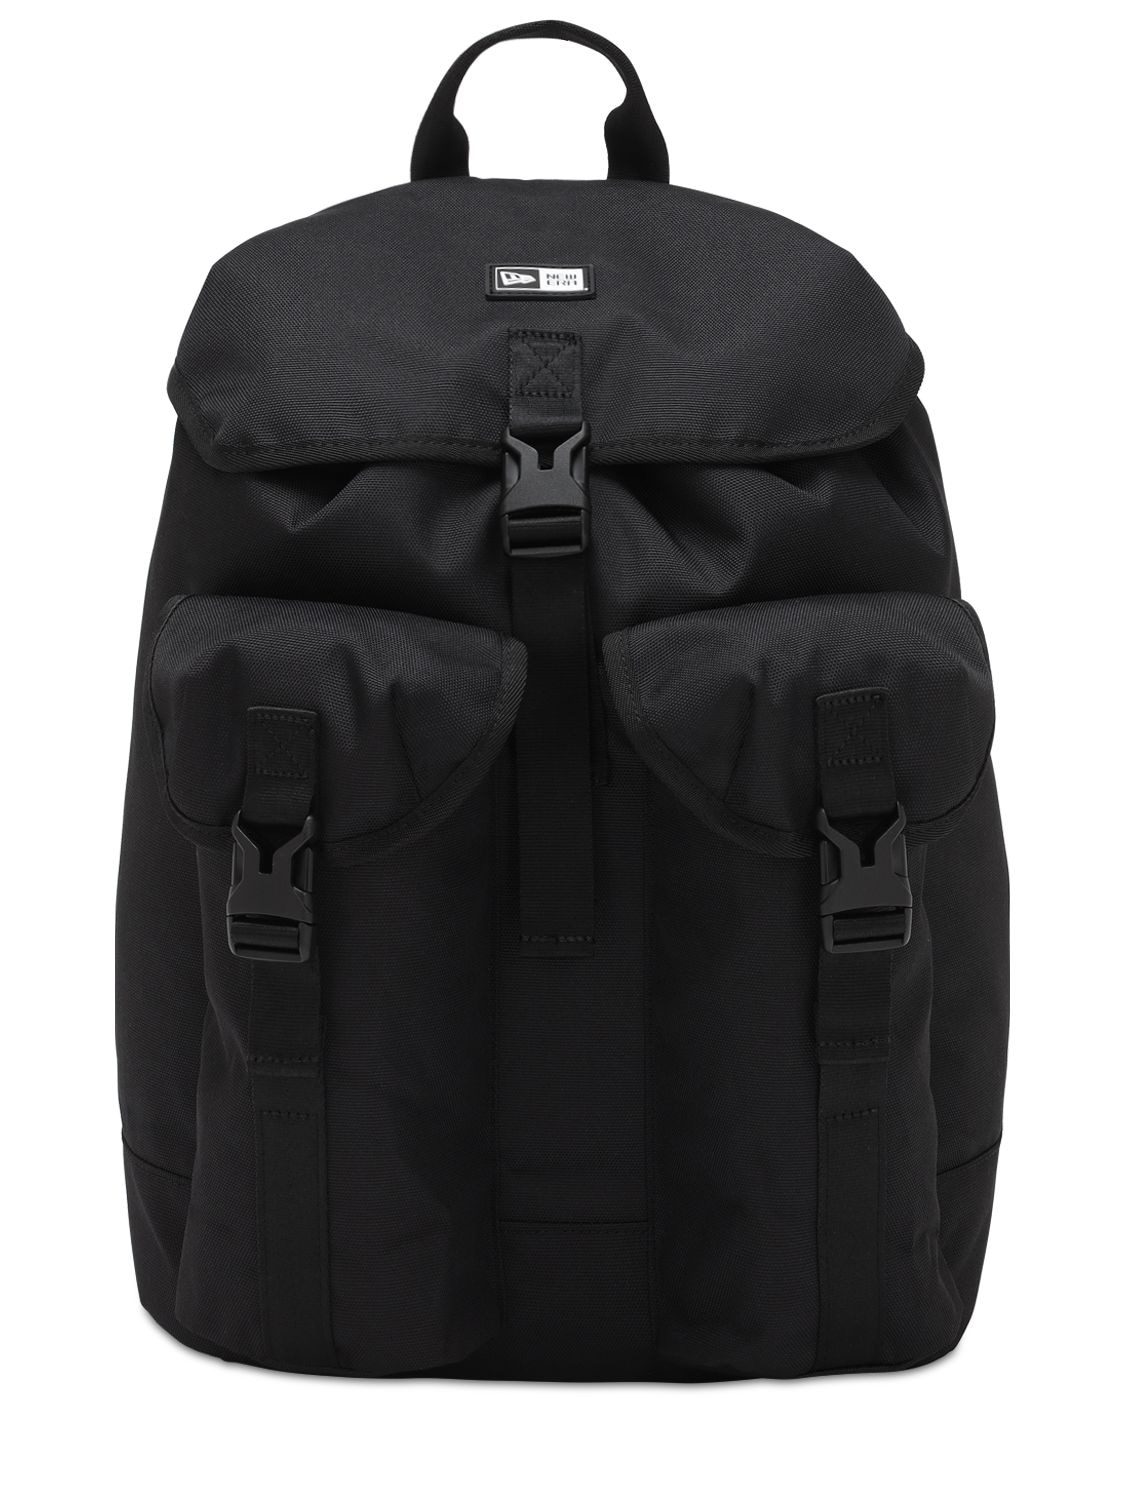 New Era Flat Top Backpack In Black